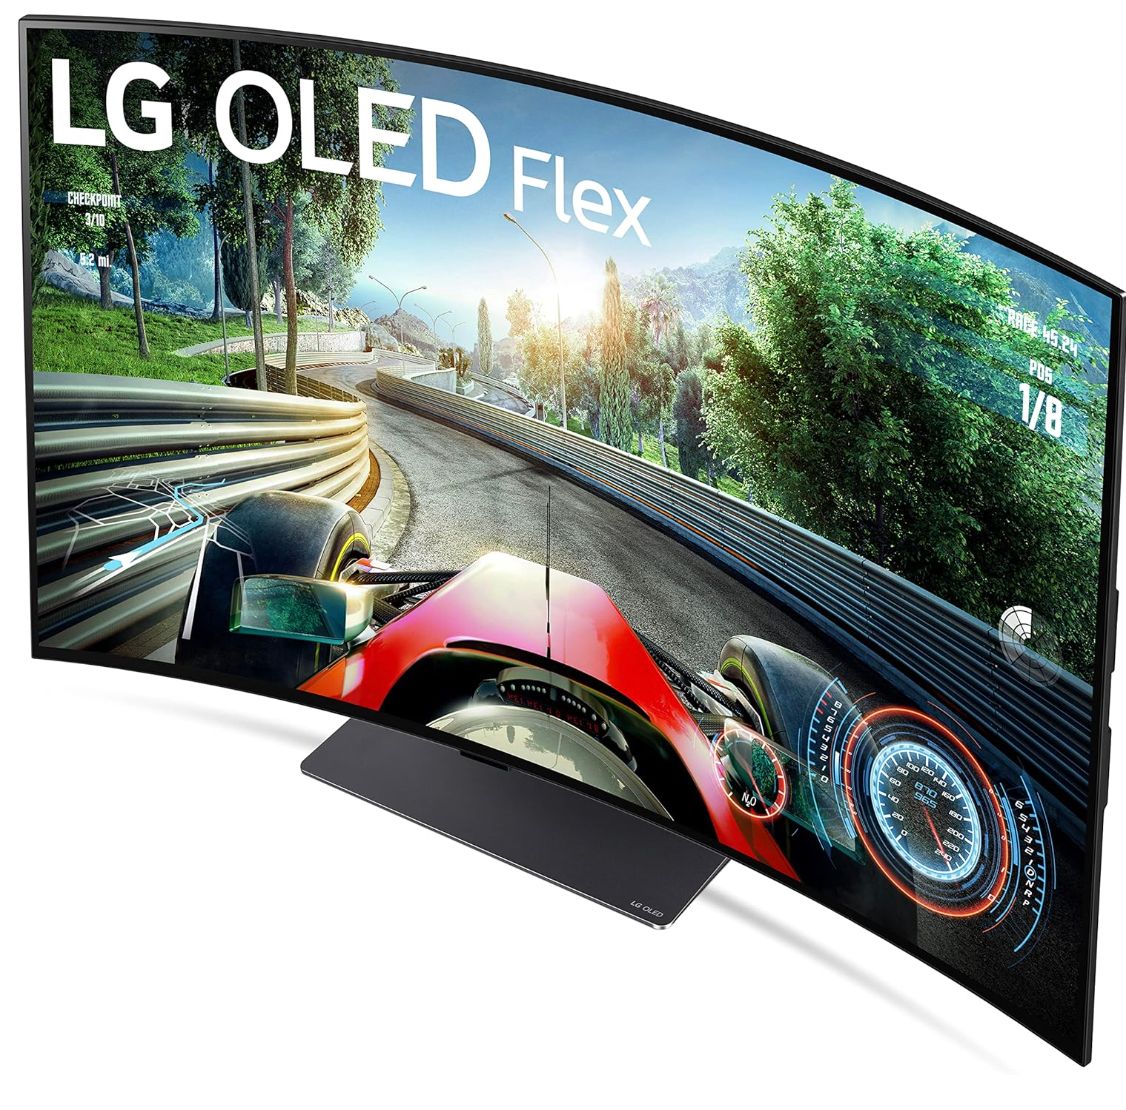 LG 42LX3QPUA OLED Flex Smart TV. 